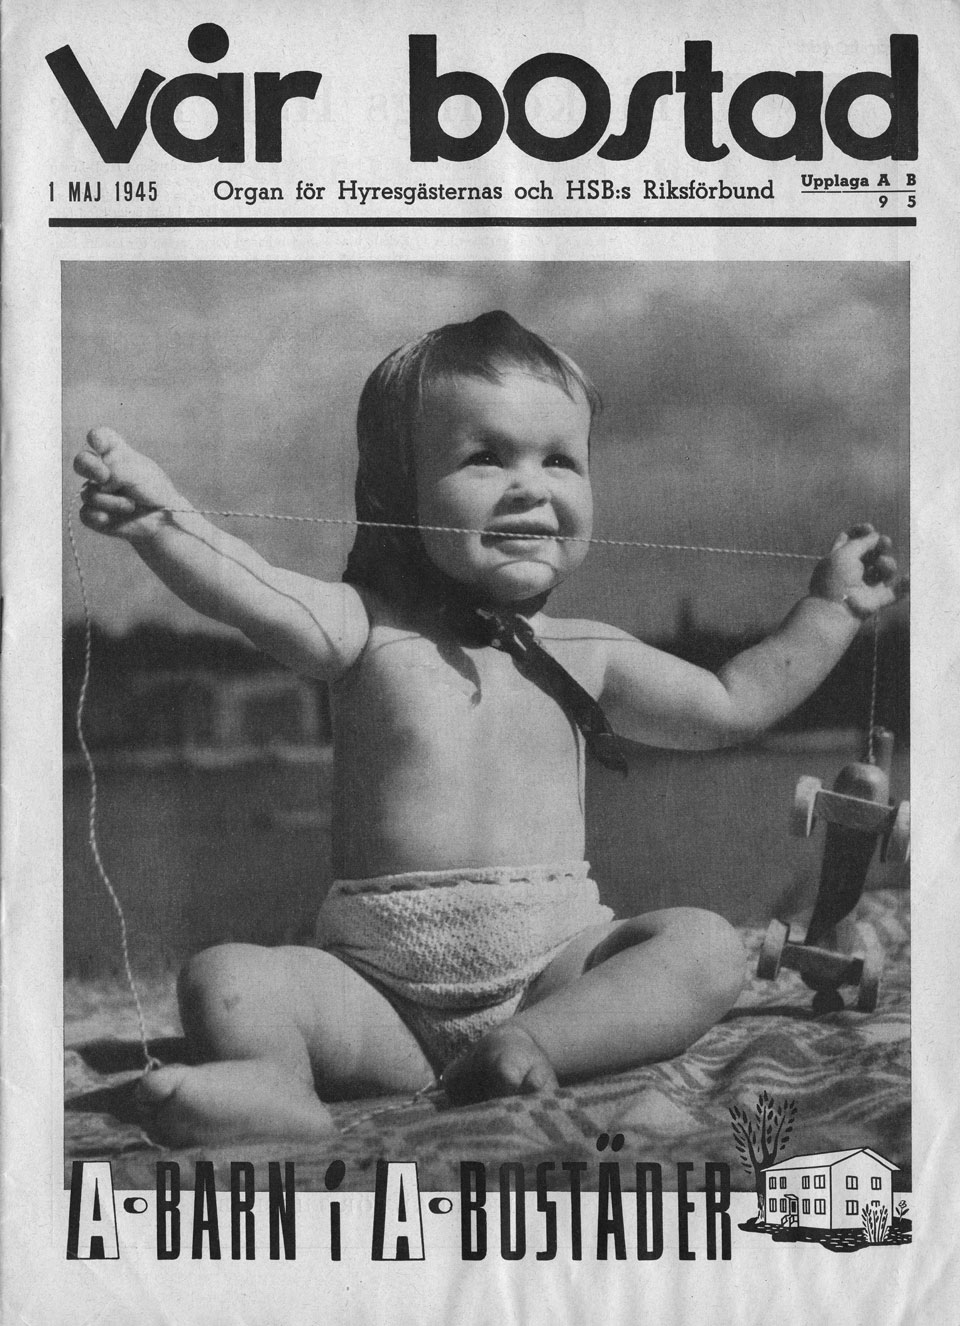 Framsidan av tidningen "Vår bostad" med en pojke sitter med vidsträckta armar. Under pojken står det "A-barn i A-bostäder".